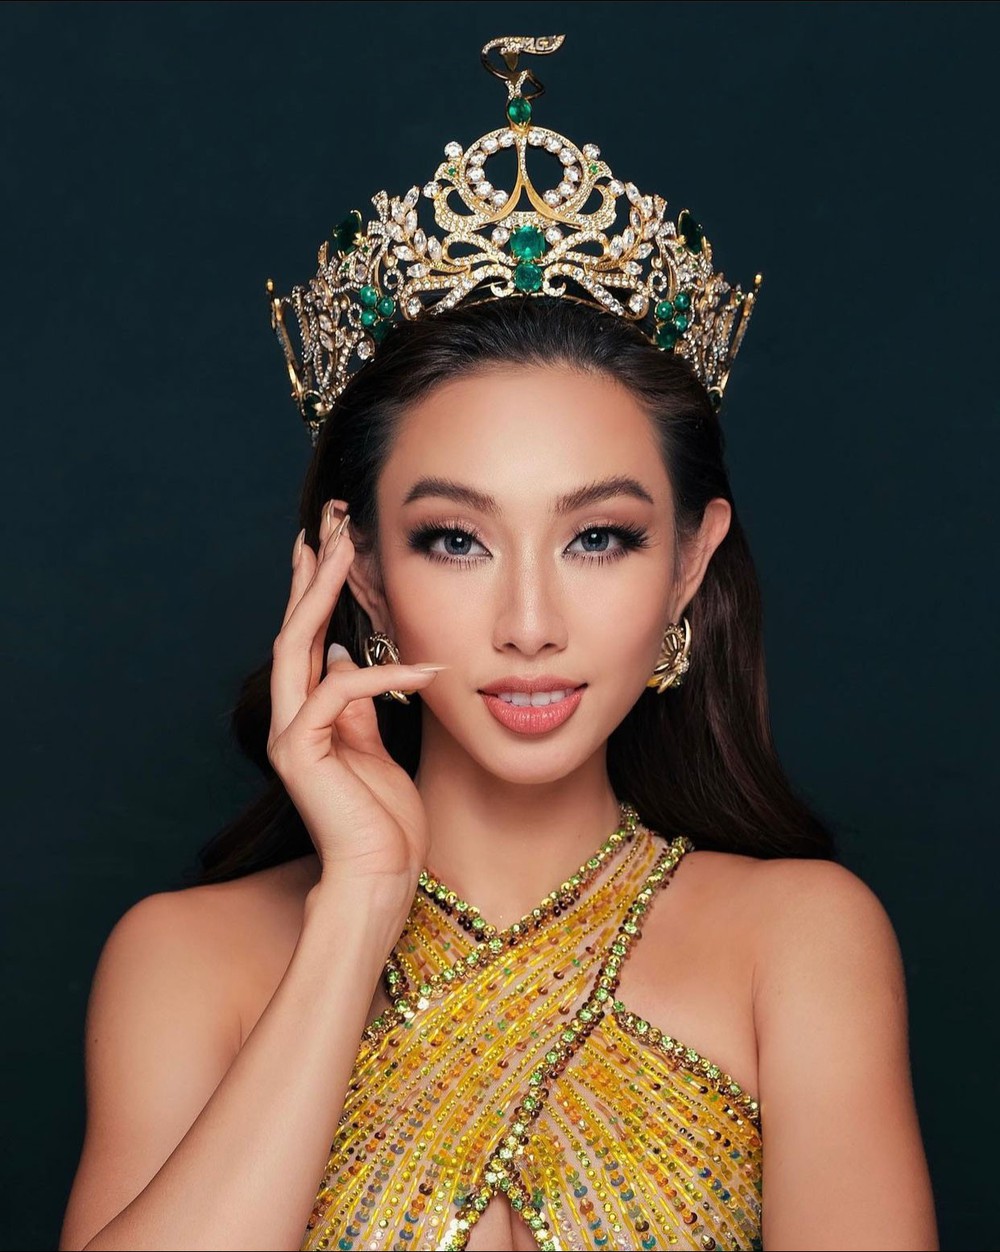 Tranh cãi Thùy Tiên gỡ bỏ danh hiệu Hoa hậu Hòa bình - Ảnh 1.